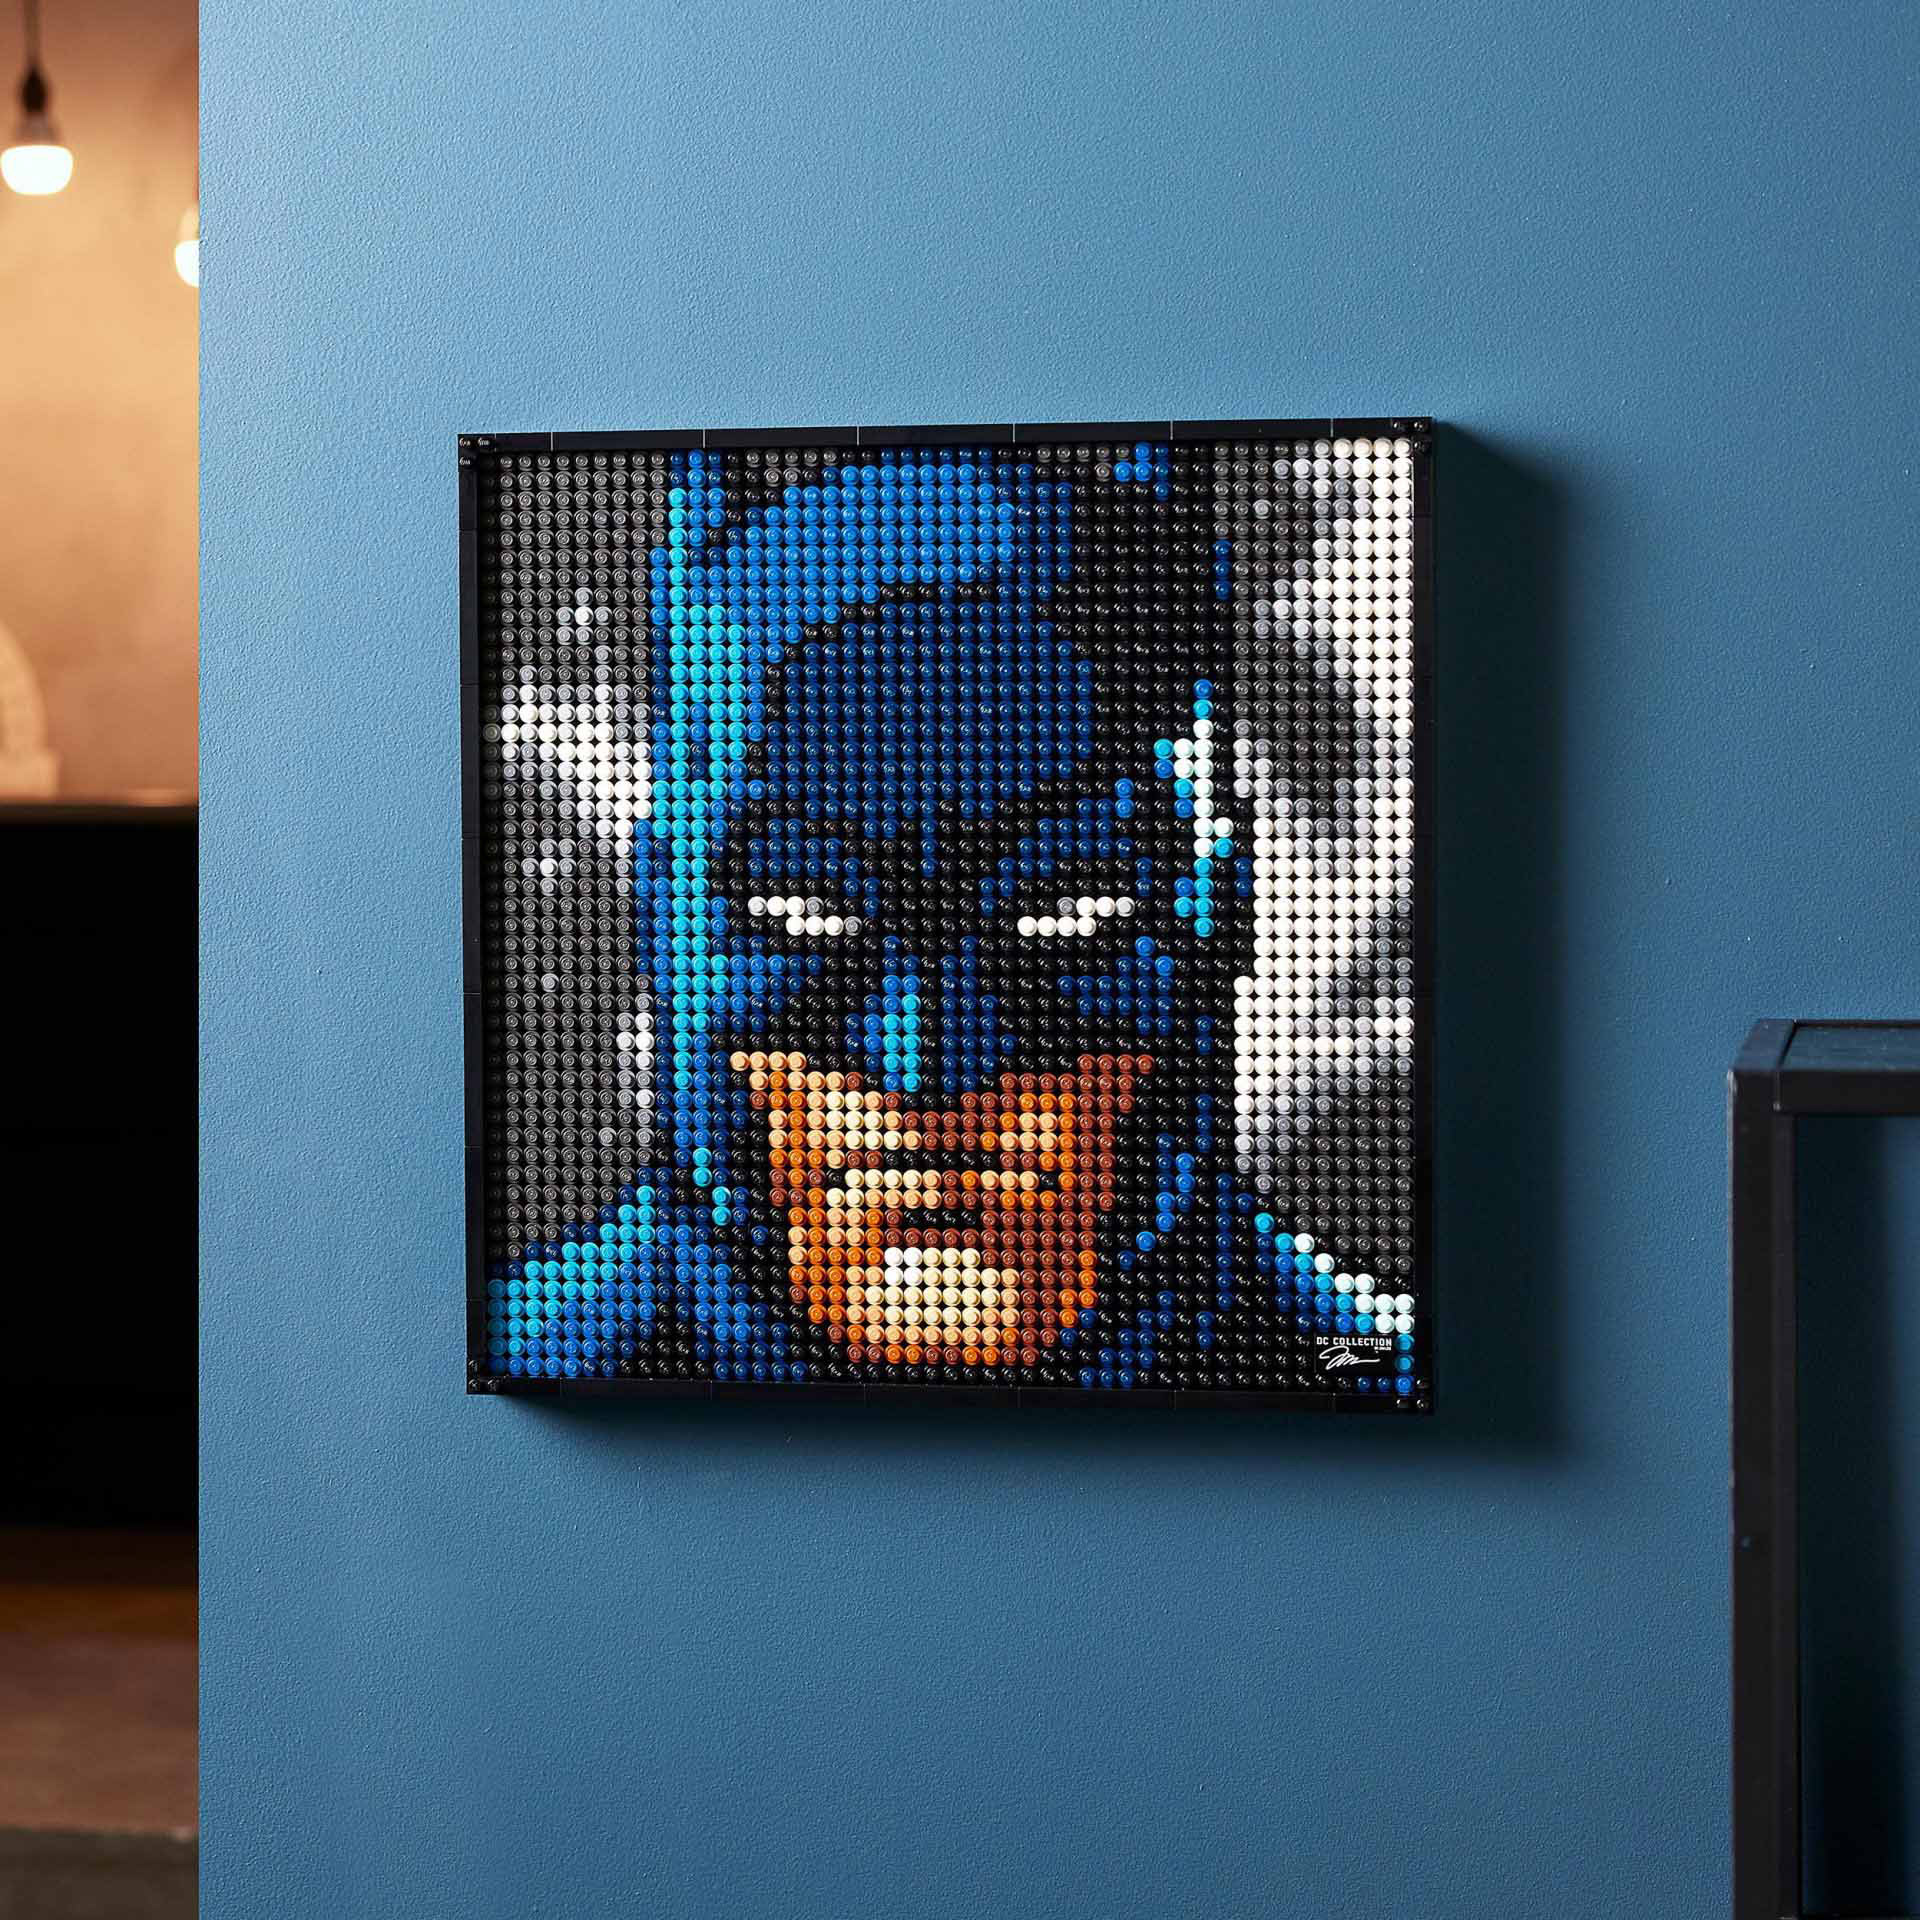 LEGO 31205 Art Collezione Jim Lee Batman, Poster Fai Da Te, Idea Regalo, Set di  31205, , large